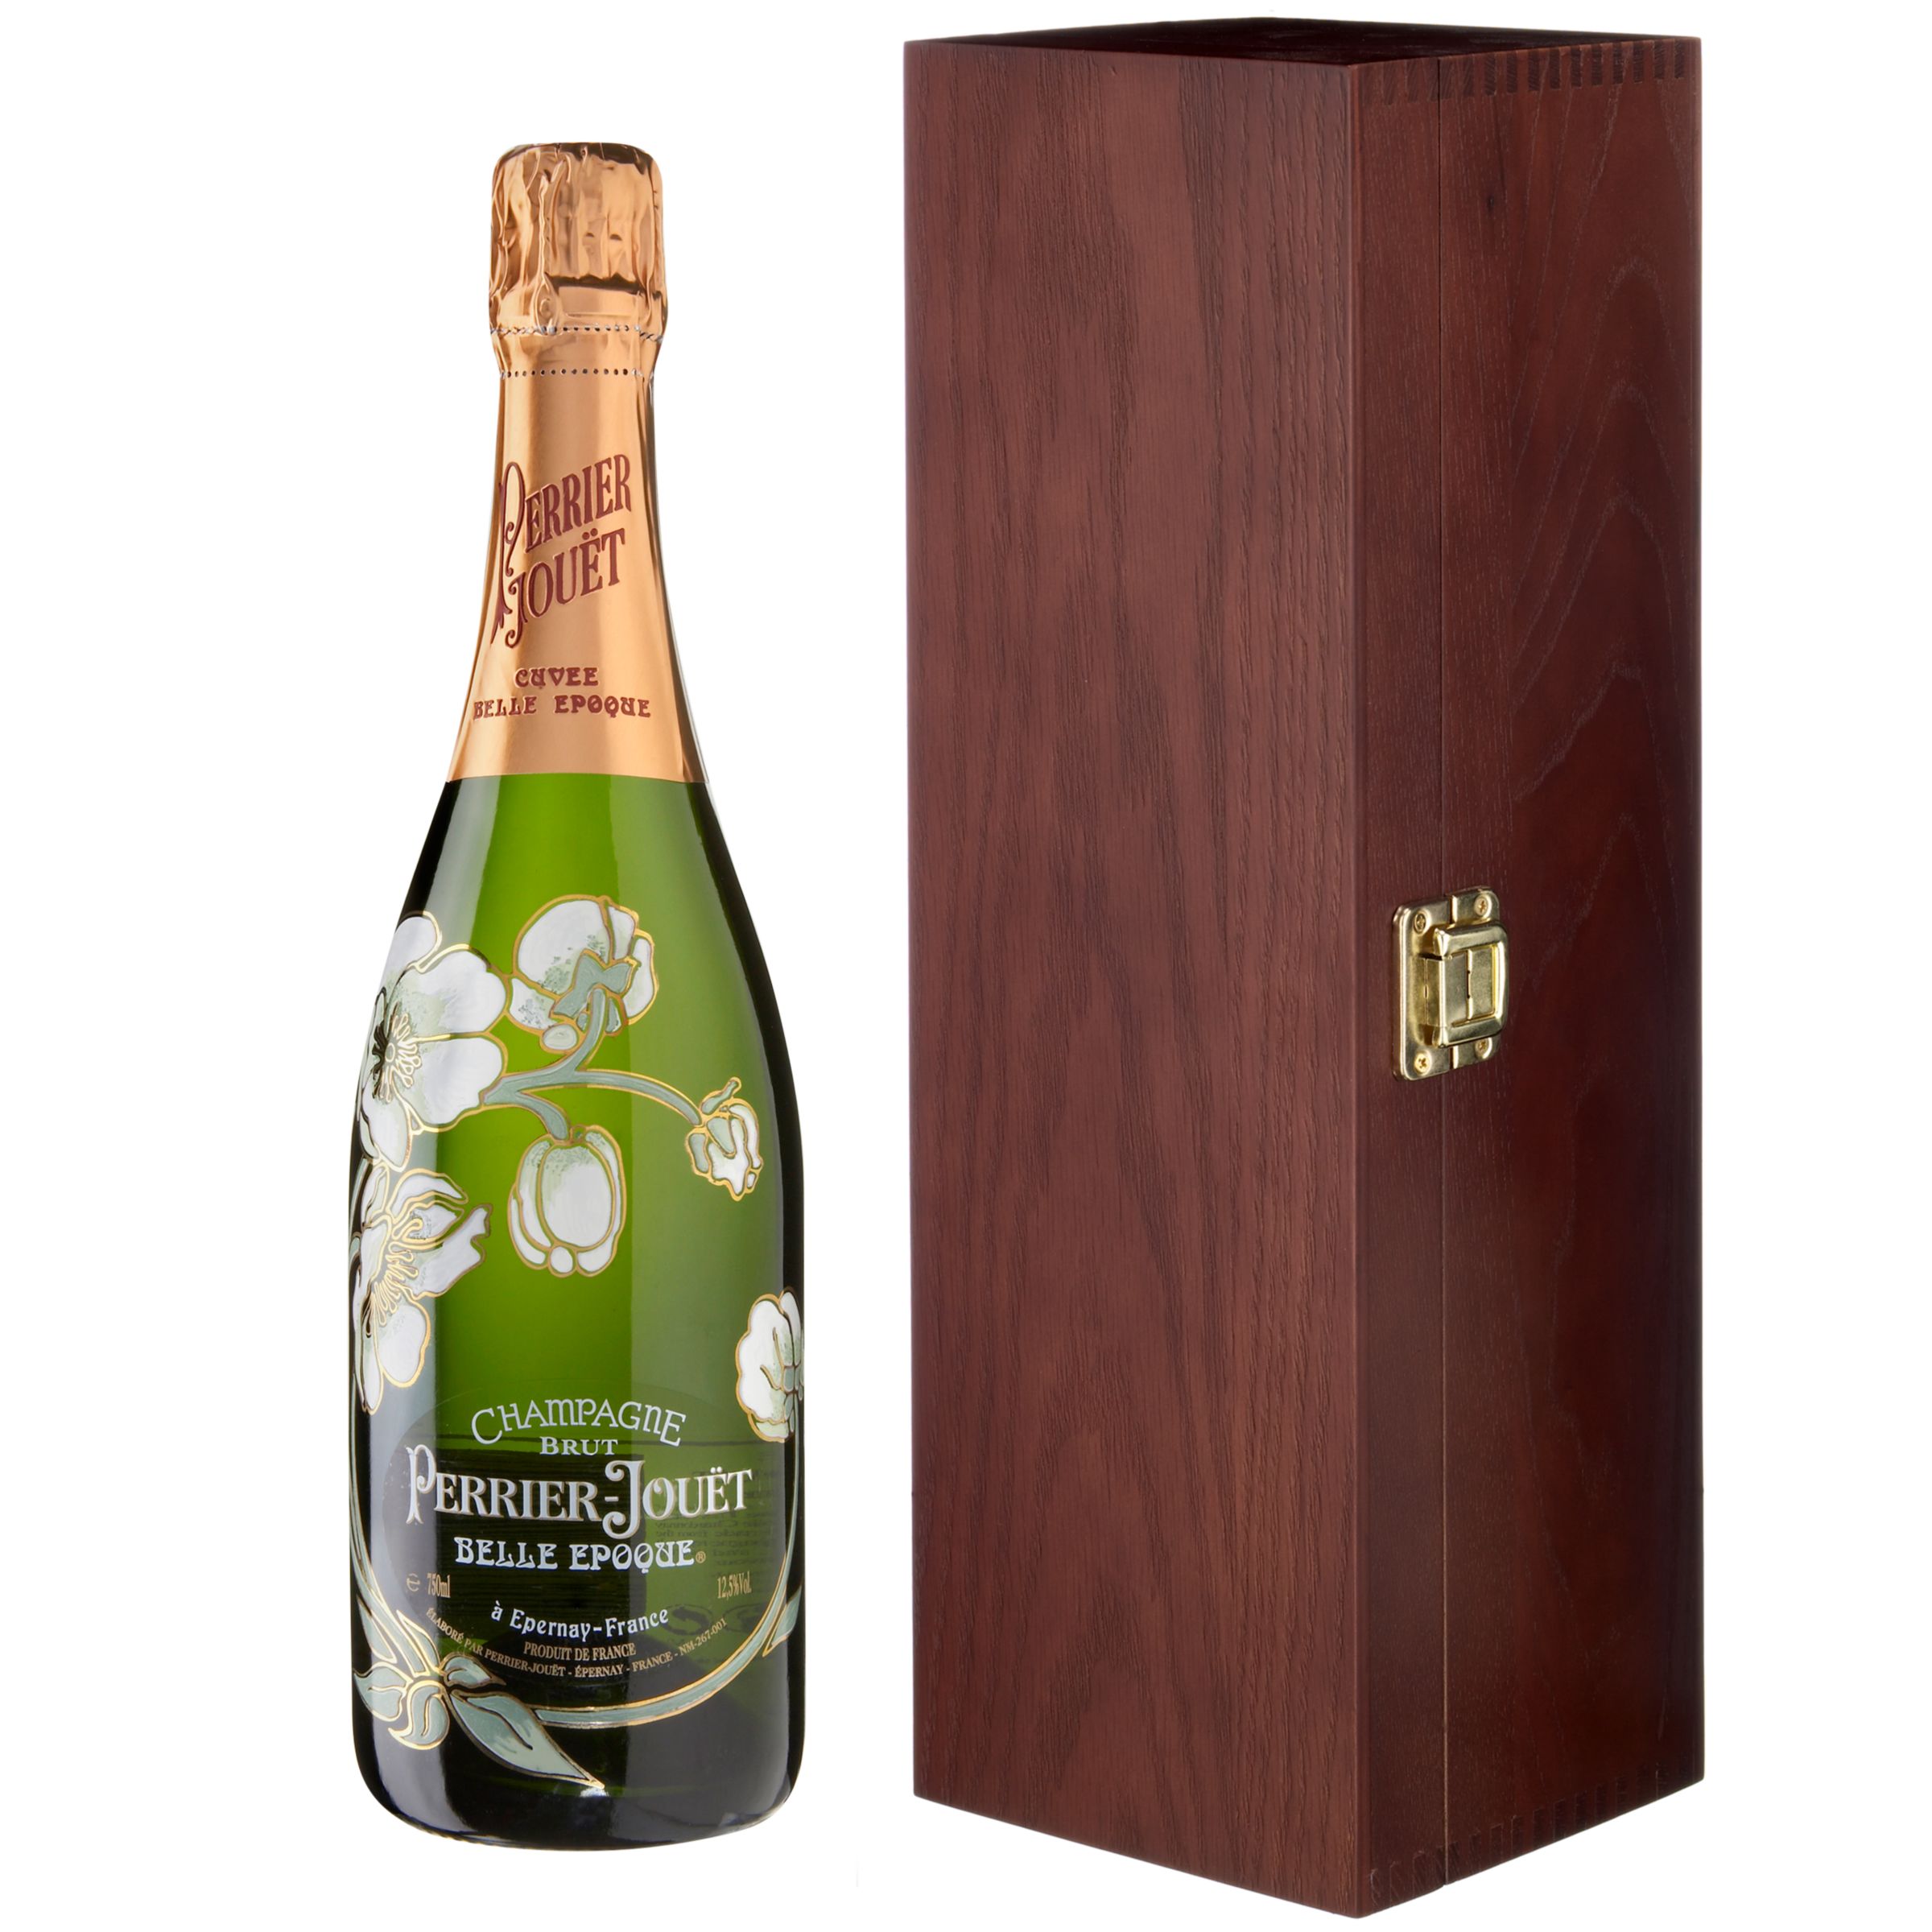 Perrier Jouët Belle Epoque Blancs 1998 Vintage Champagne Magnum Gift at John Lewis